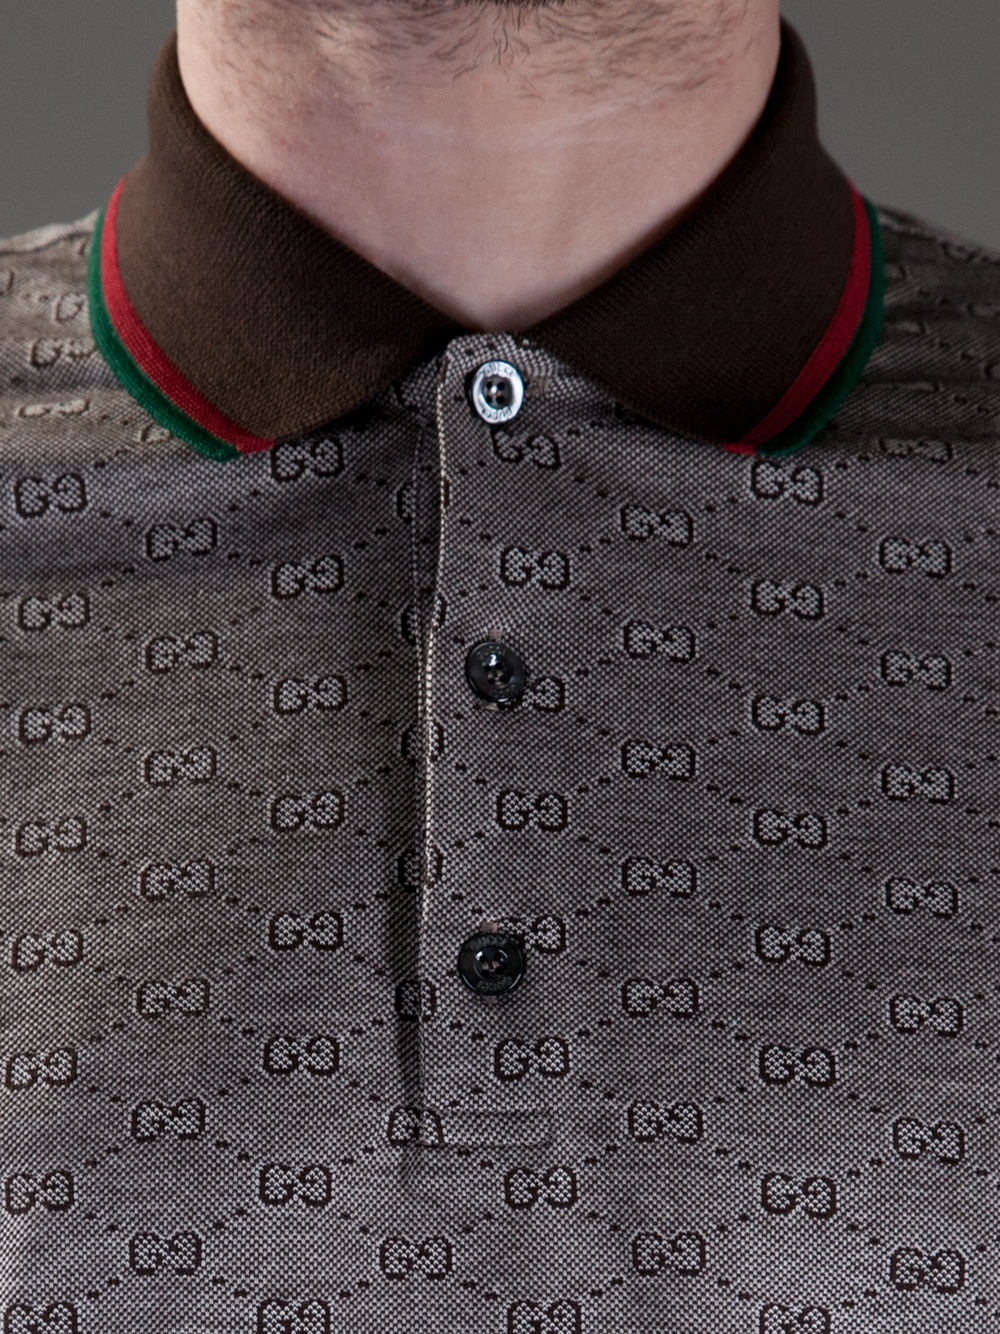 Gucci Jacquard G-monogram Polo Shirt - Farfetch